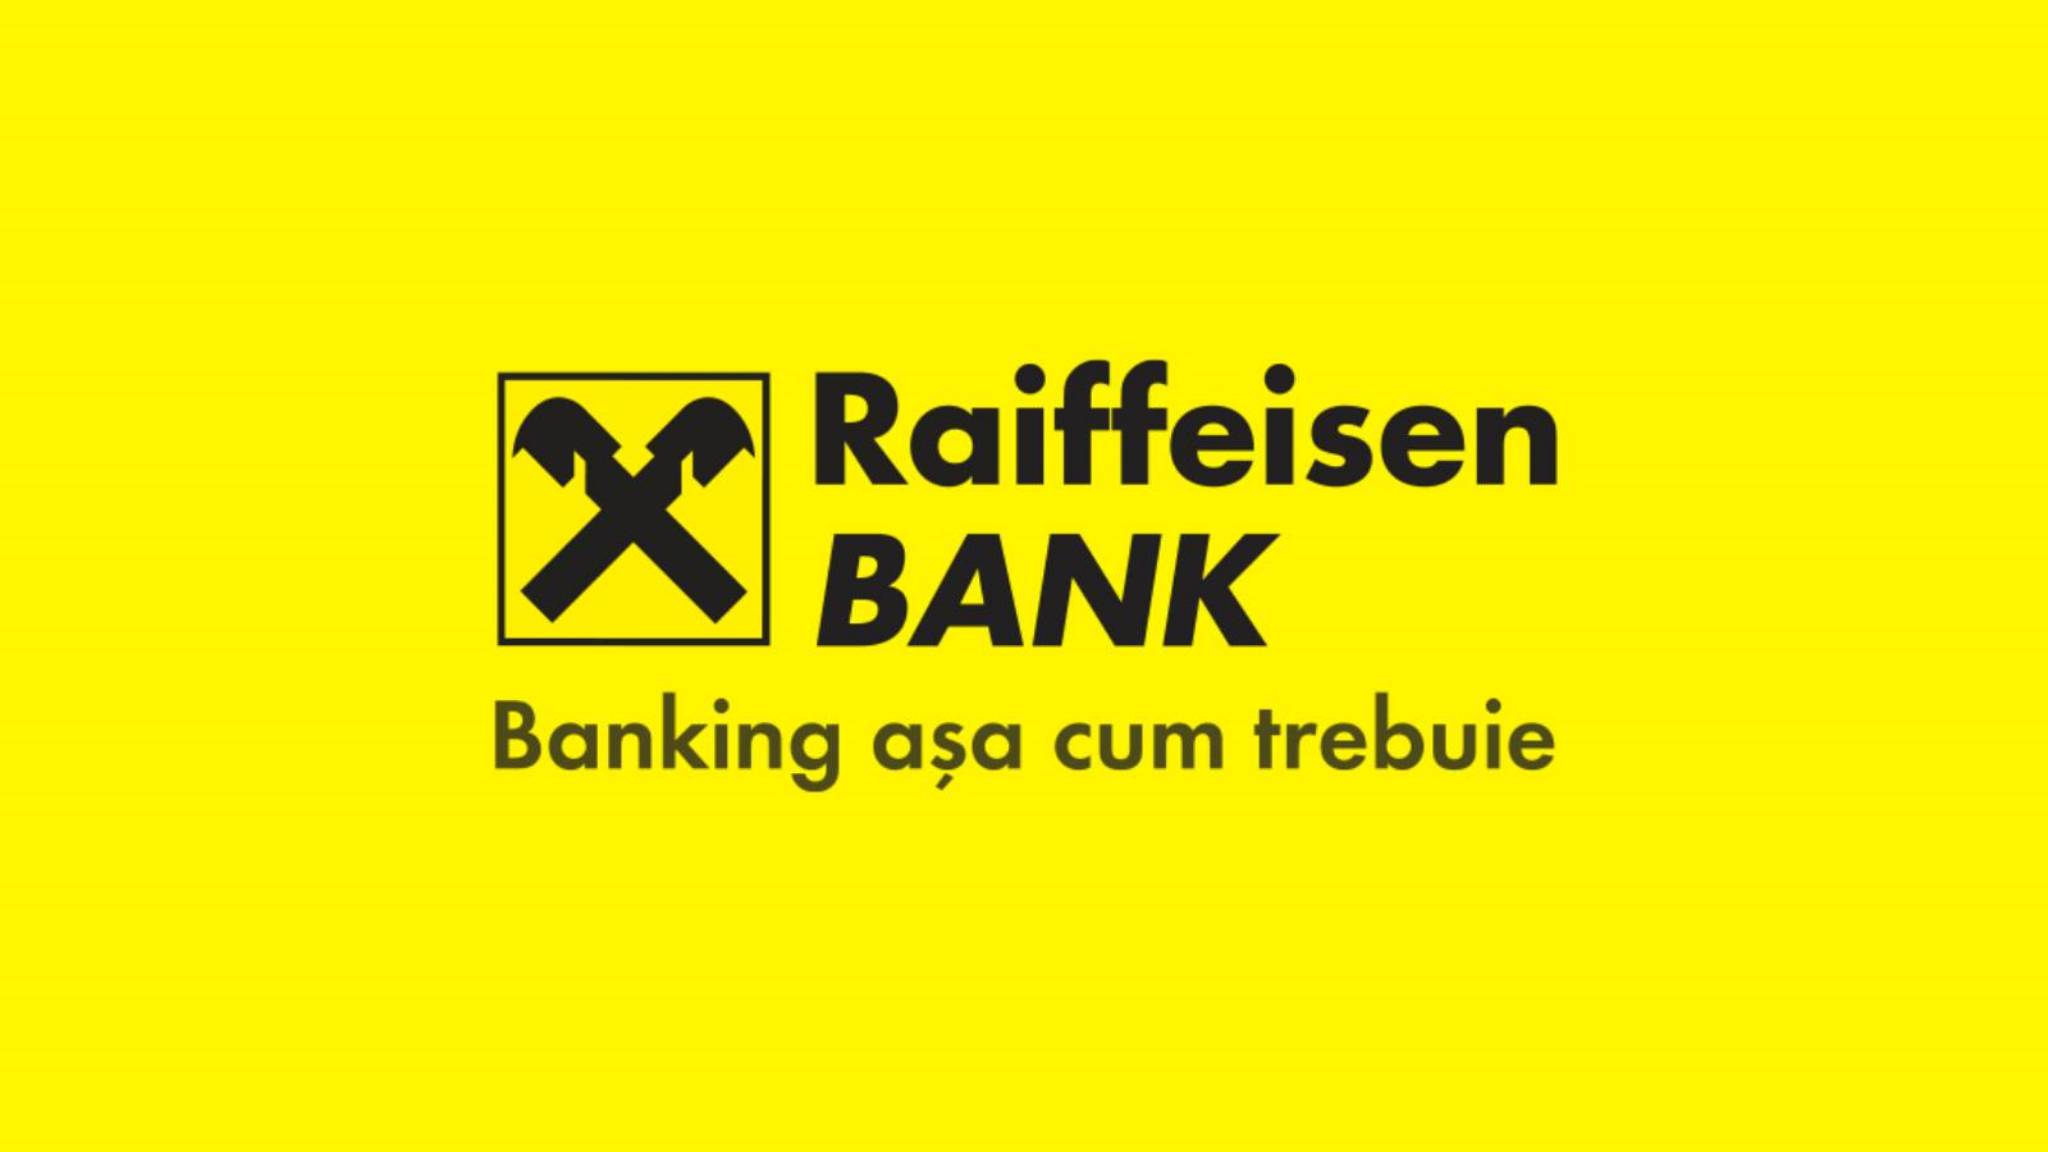 Raiffeisen Bank loiali